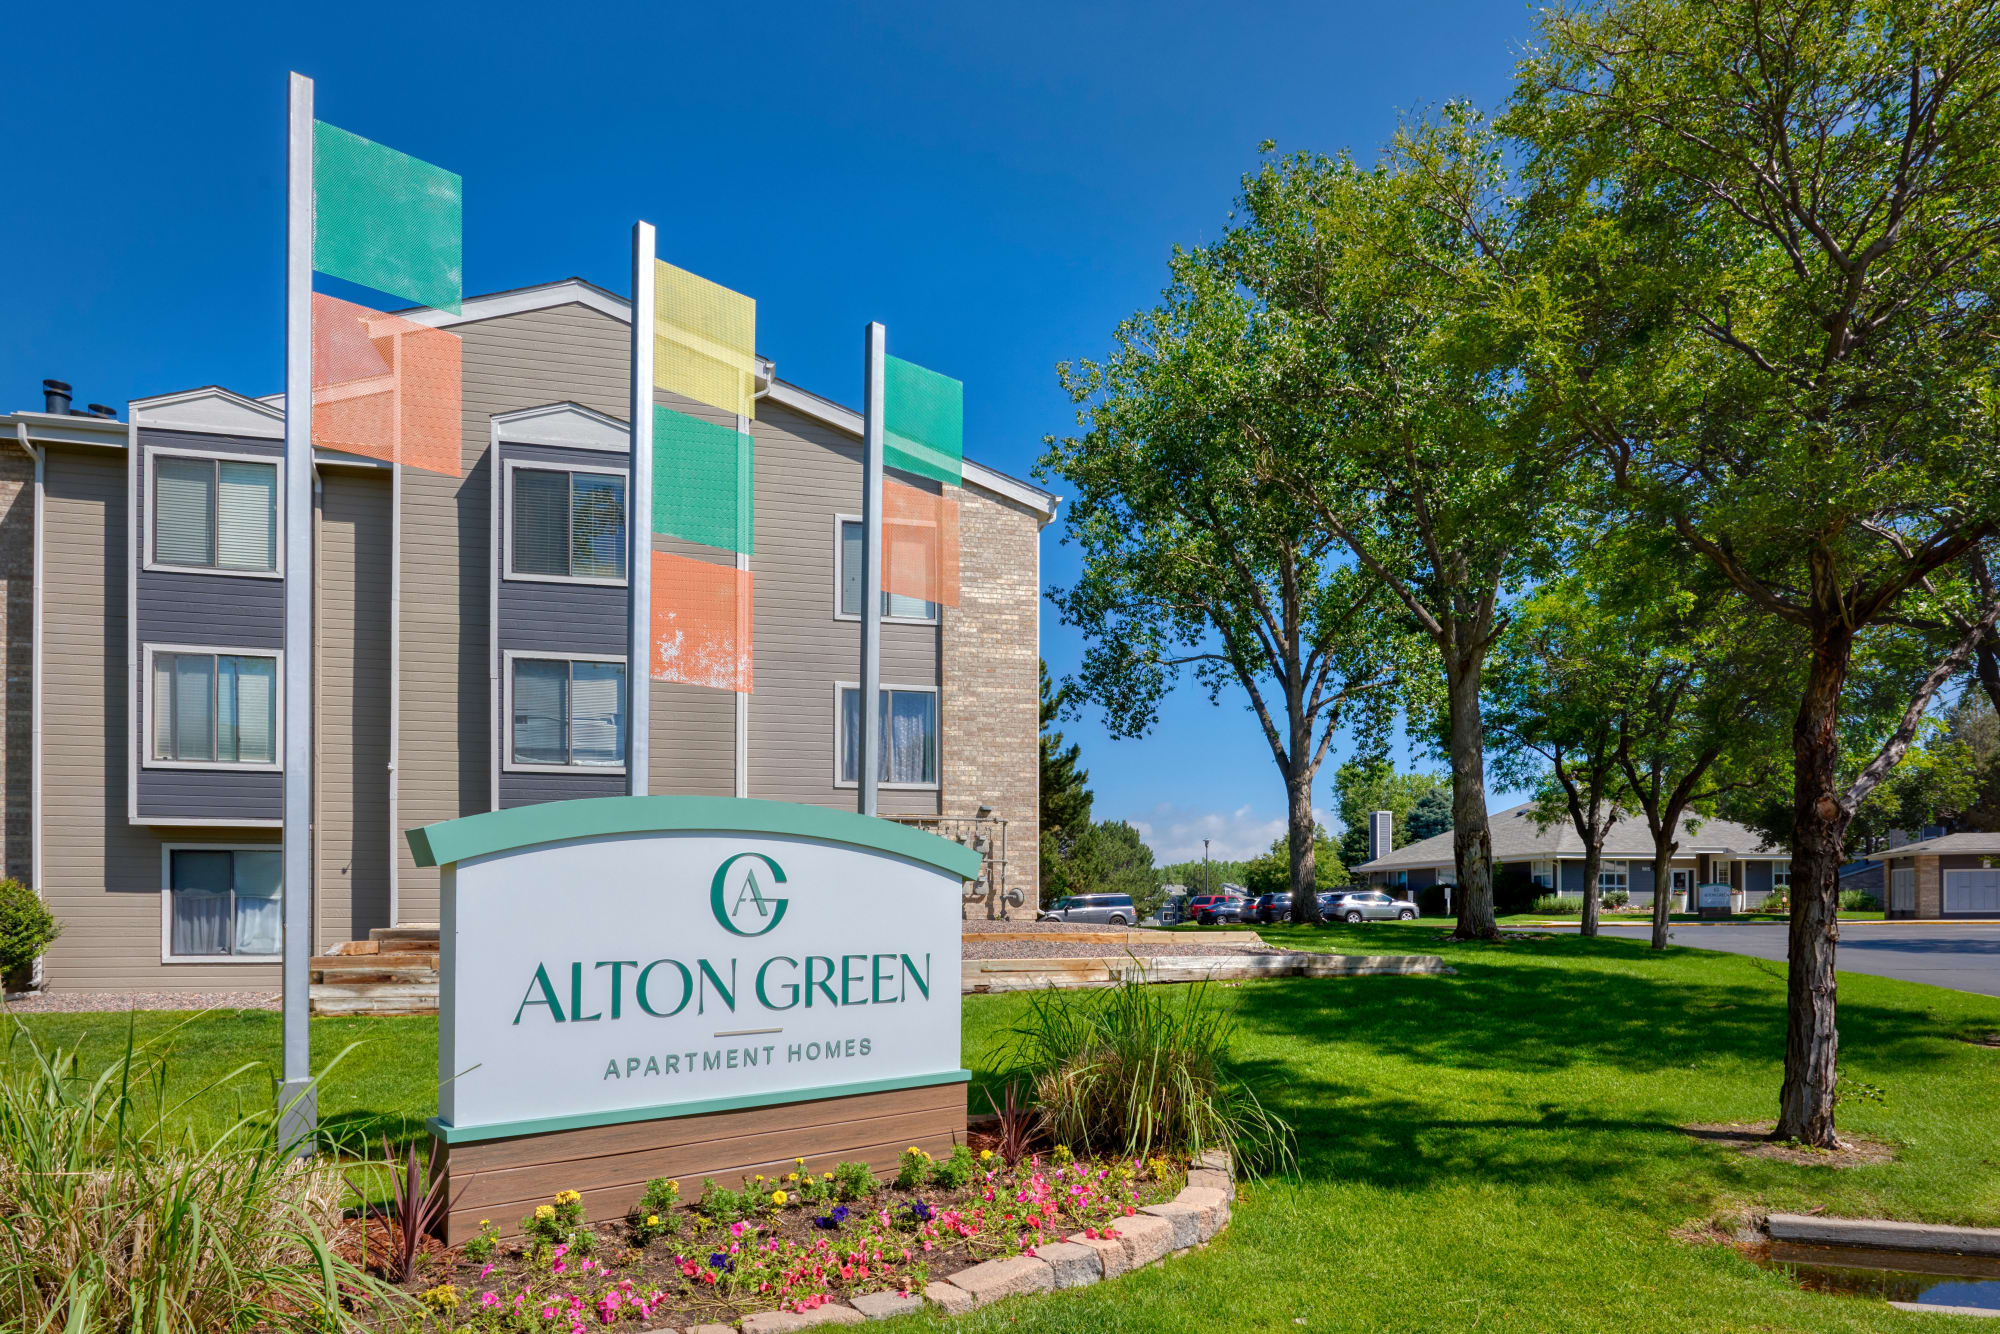 Alton Green at Alton Green Apartments in Denver, Colorado